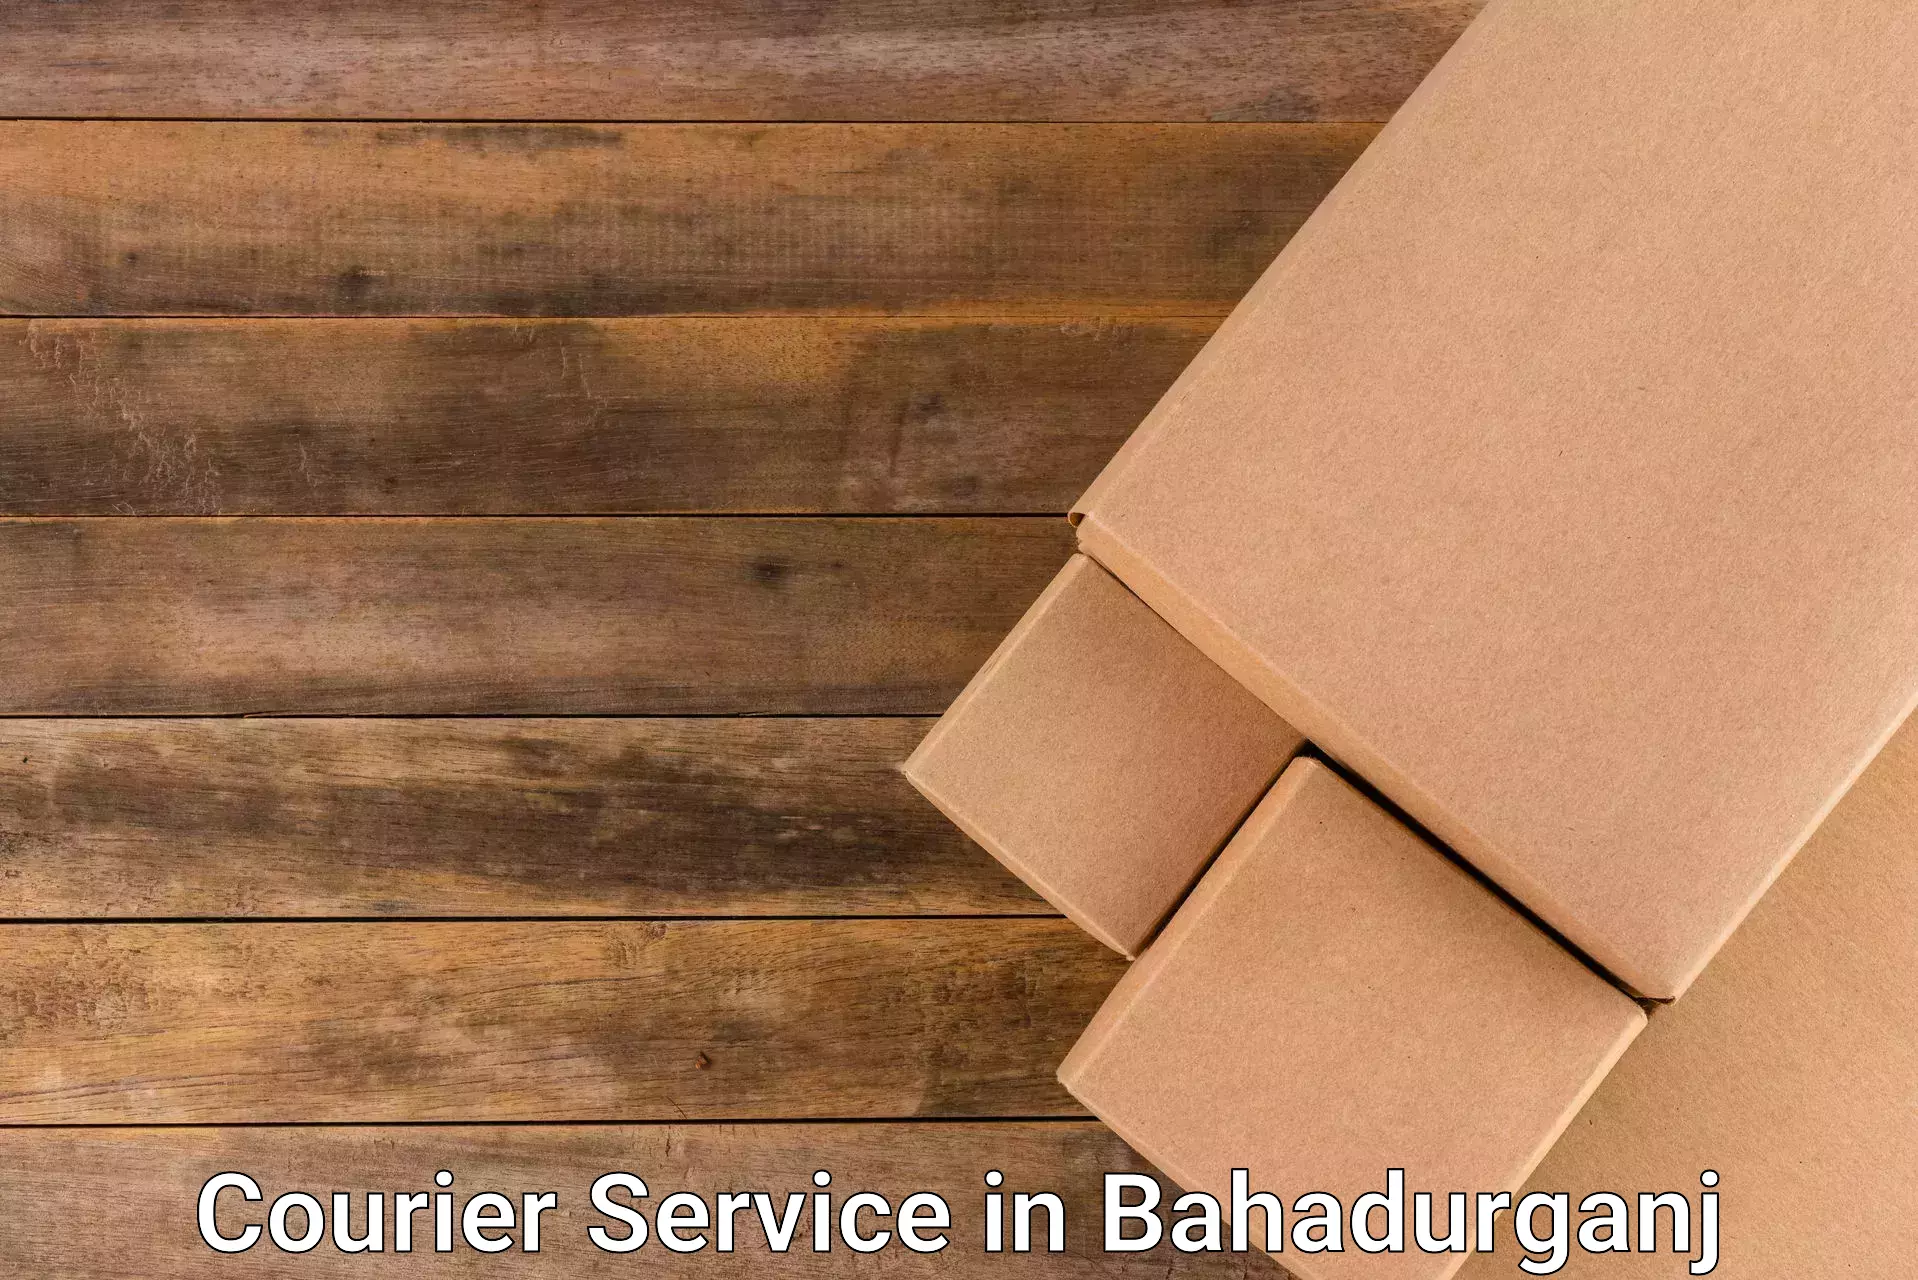 Comprehensive logistics solutions in Bahadurganj